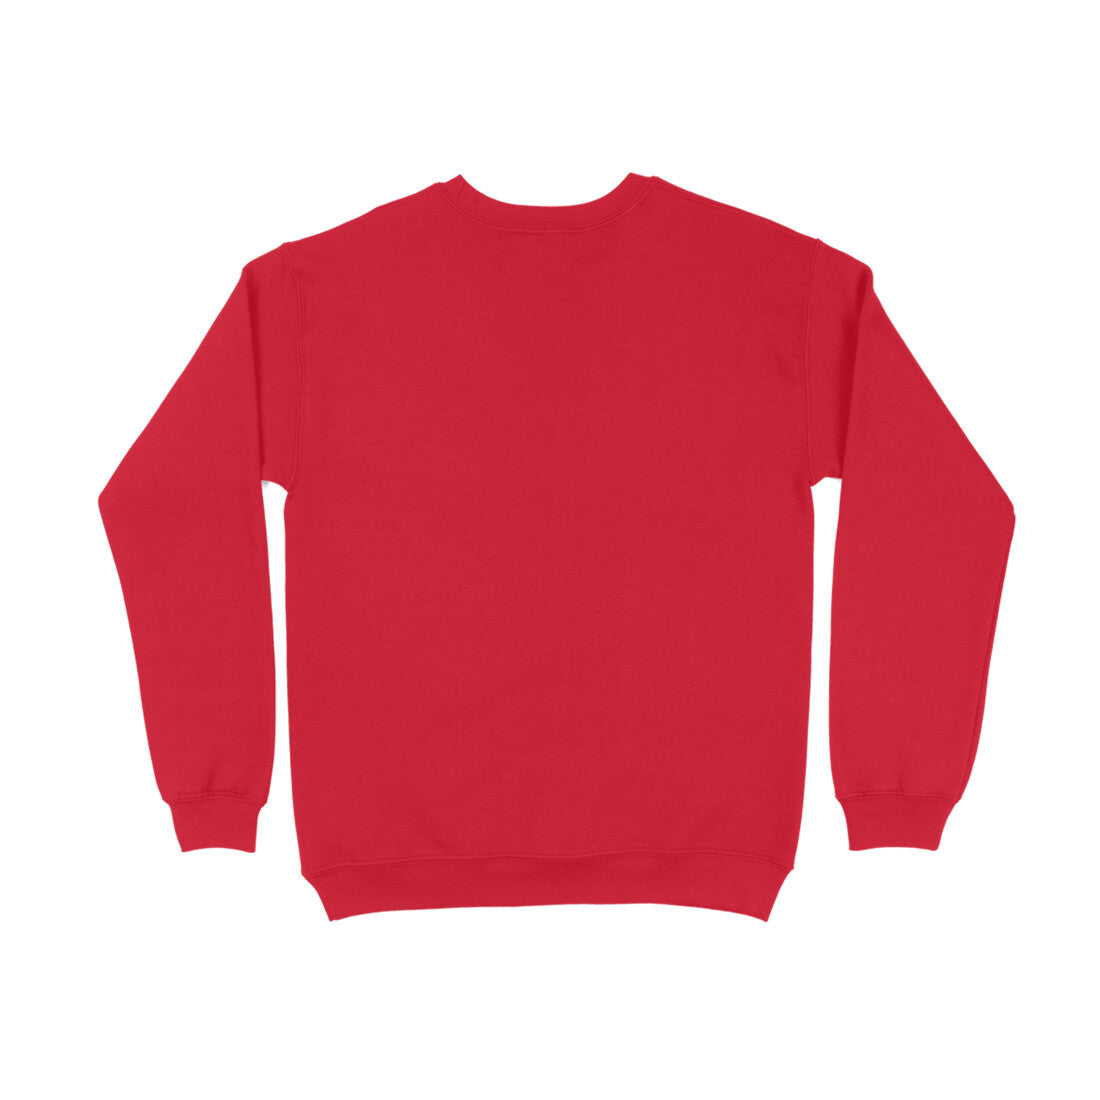 DT Red Unisex Sweatshirt